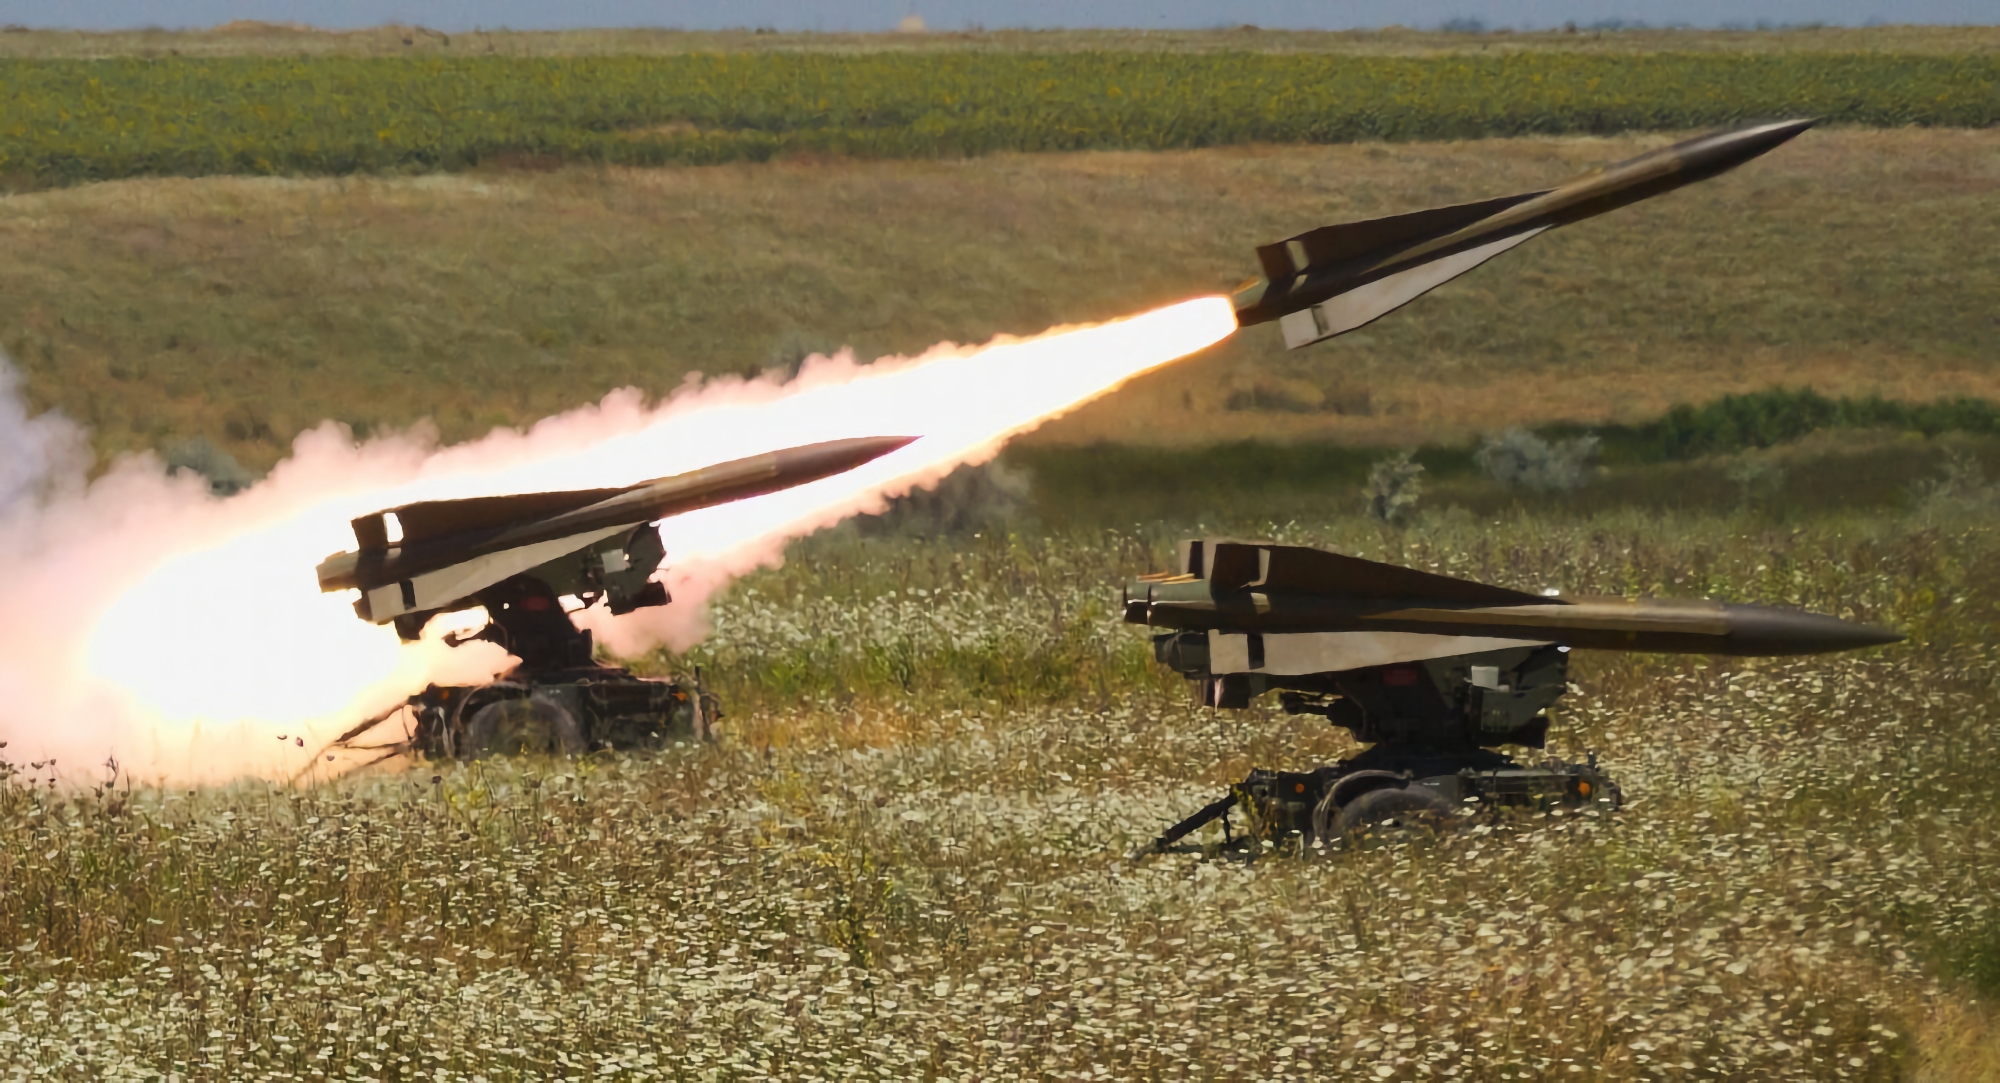 Det ukrainske luftvåben demonstrerede driften af det amerikanske HAWK jord-til-luft-missilsystem